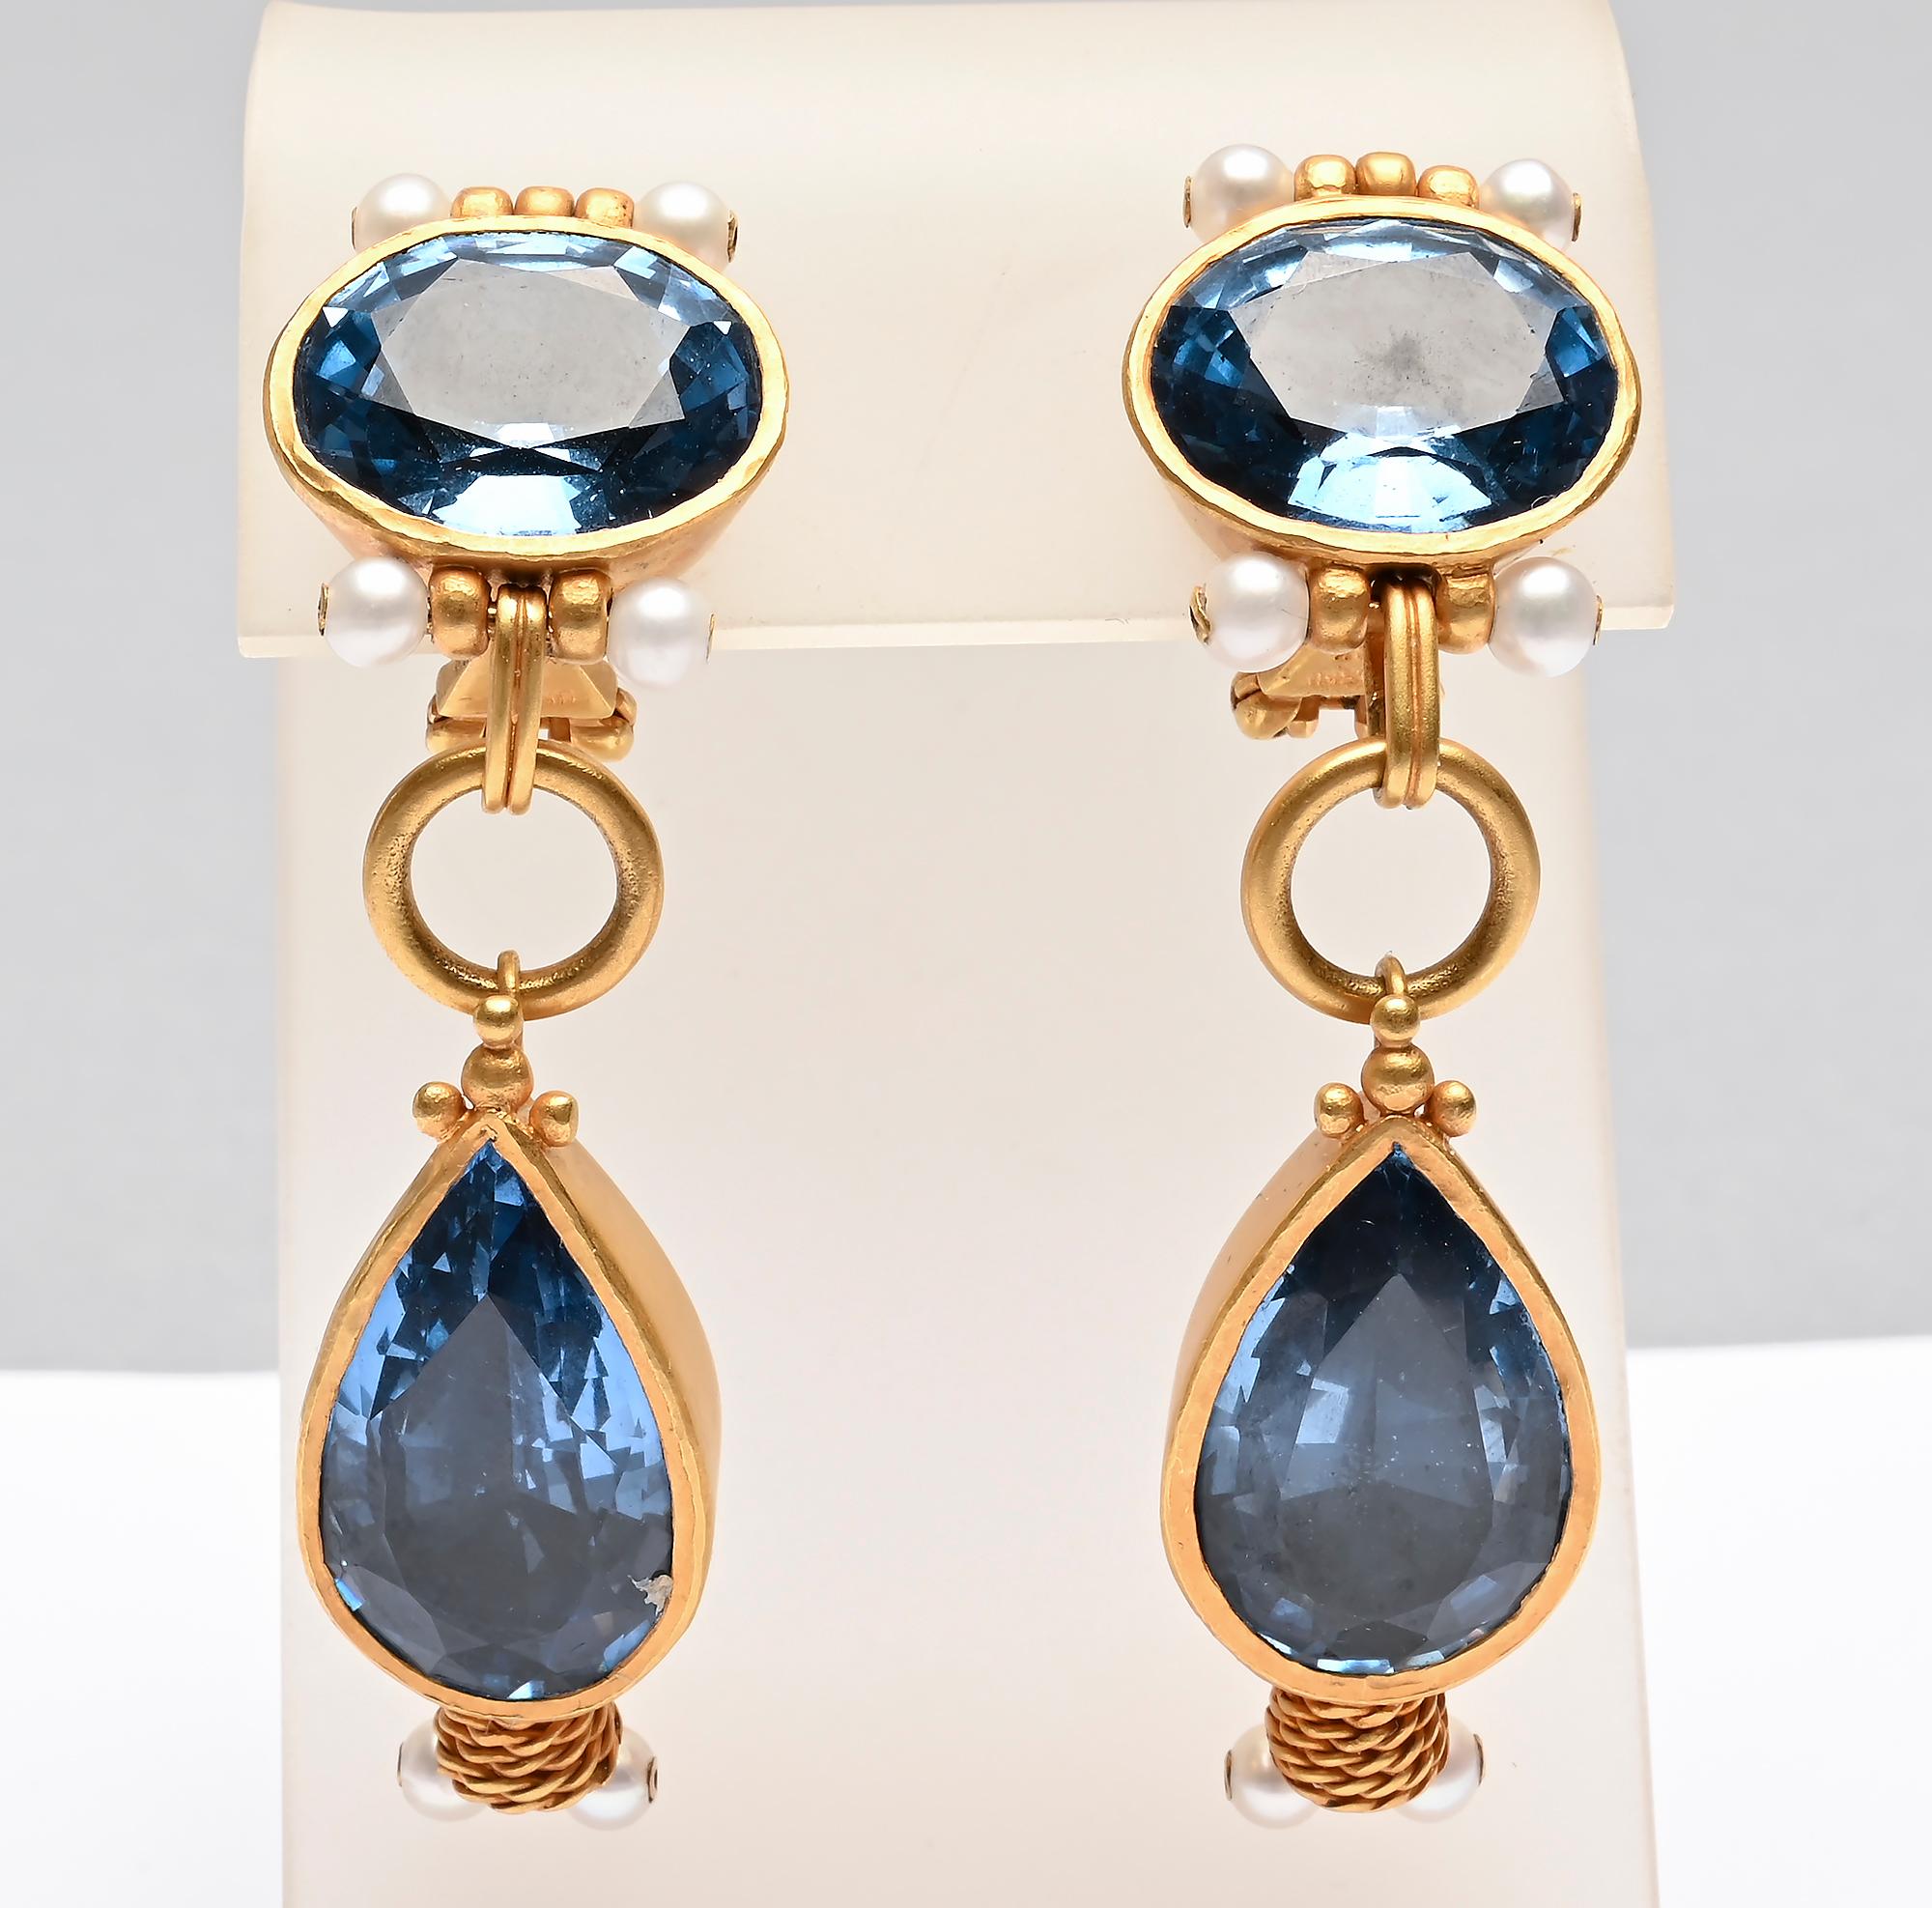 Sehr ungewöhnliche und elegante Ohrringe aus 18 Karat Gold mit zwei großen blauen Topas-Steinen. Der Deckel ist oval, misst 5/8